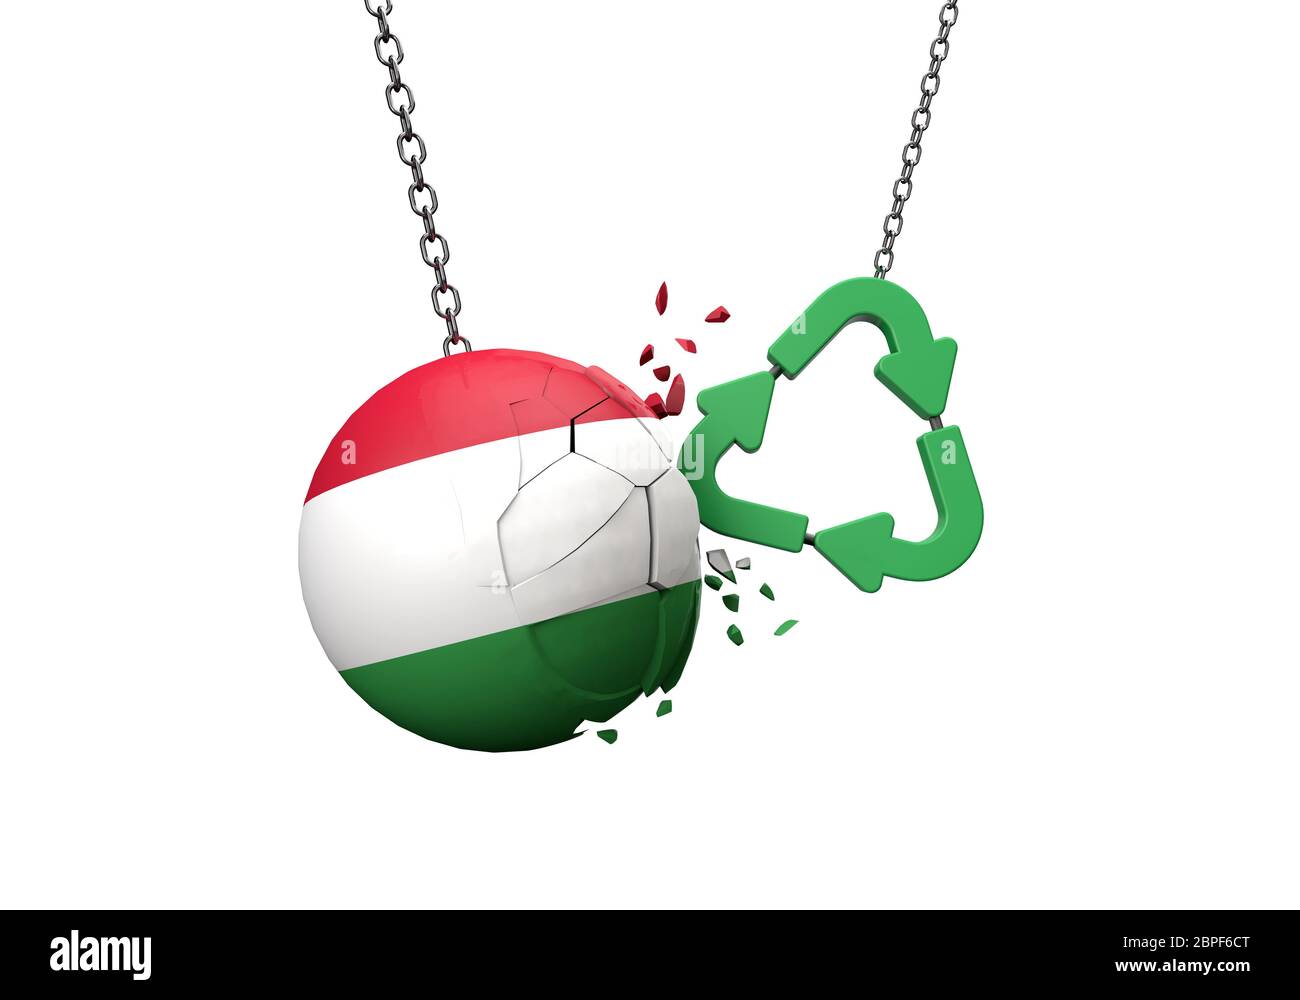 Simbolo di riciclo verde che si schiantano in una palla bandiera ungherese. Rendering 3D Foto Stock